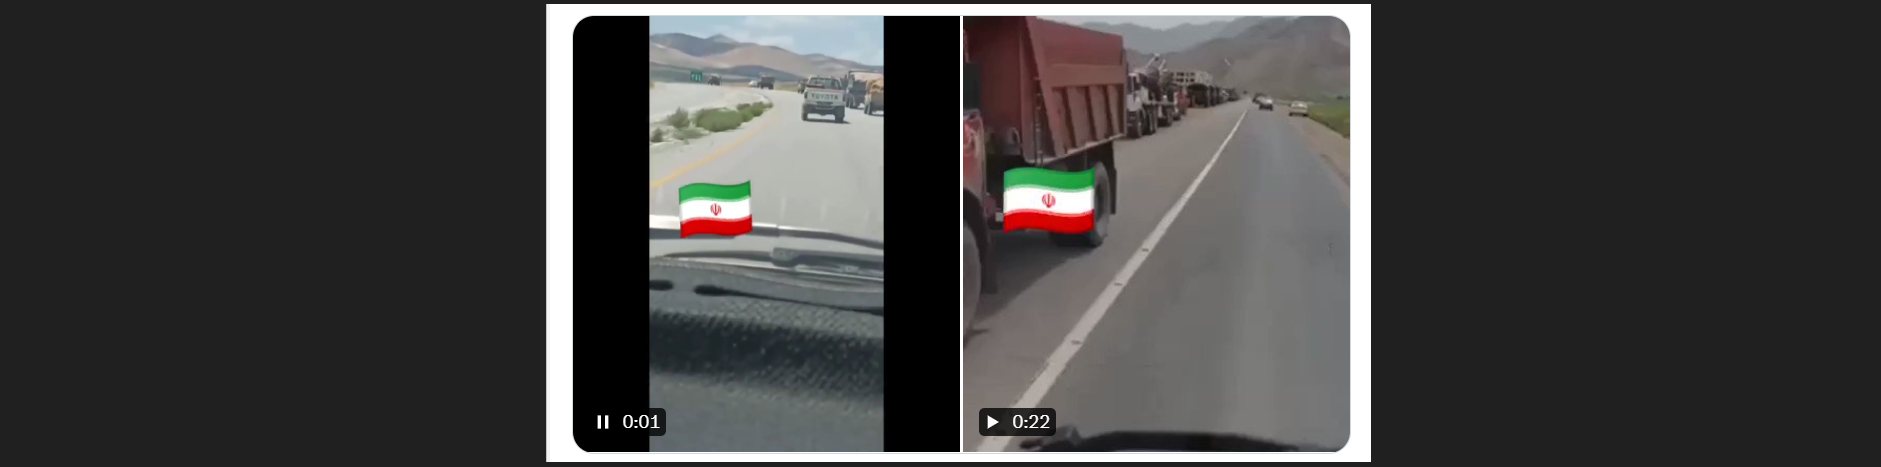 Το Ιράν αποσύρει τα στρατεύματα από τα σύνορα με το ιρακινό Κουρδιστάν και τα μεταφέρει προς το Αφγανιστάν